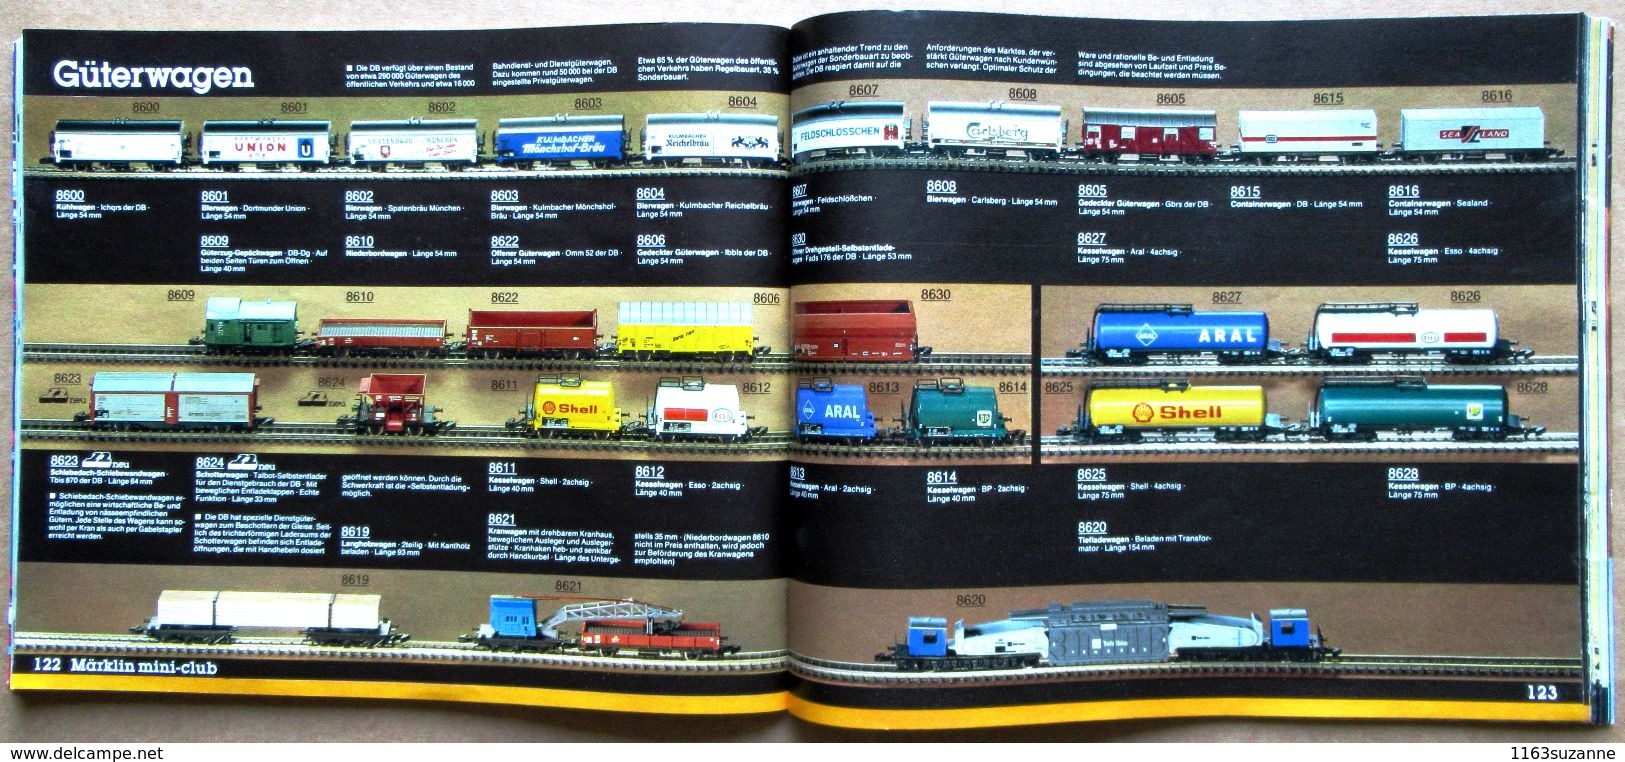 Catalogue allemand MÄRKLIN 1981 : trains et voitures électriques, jeux de construction...